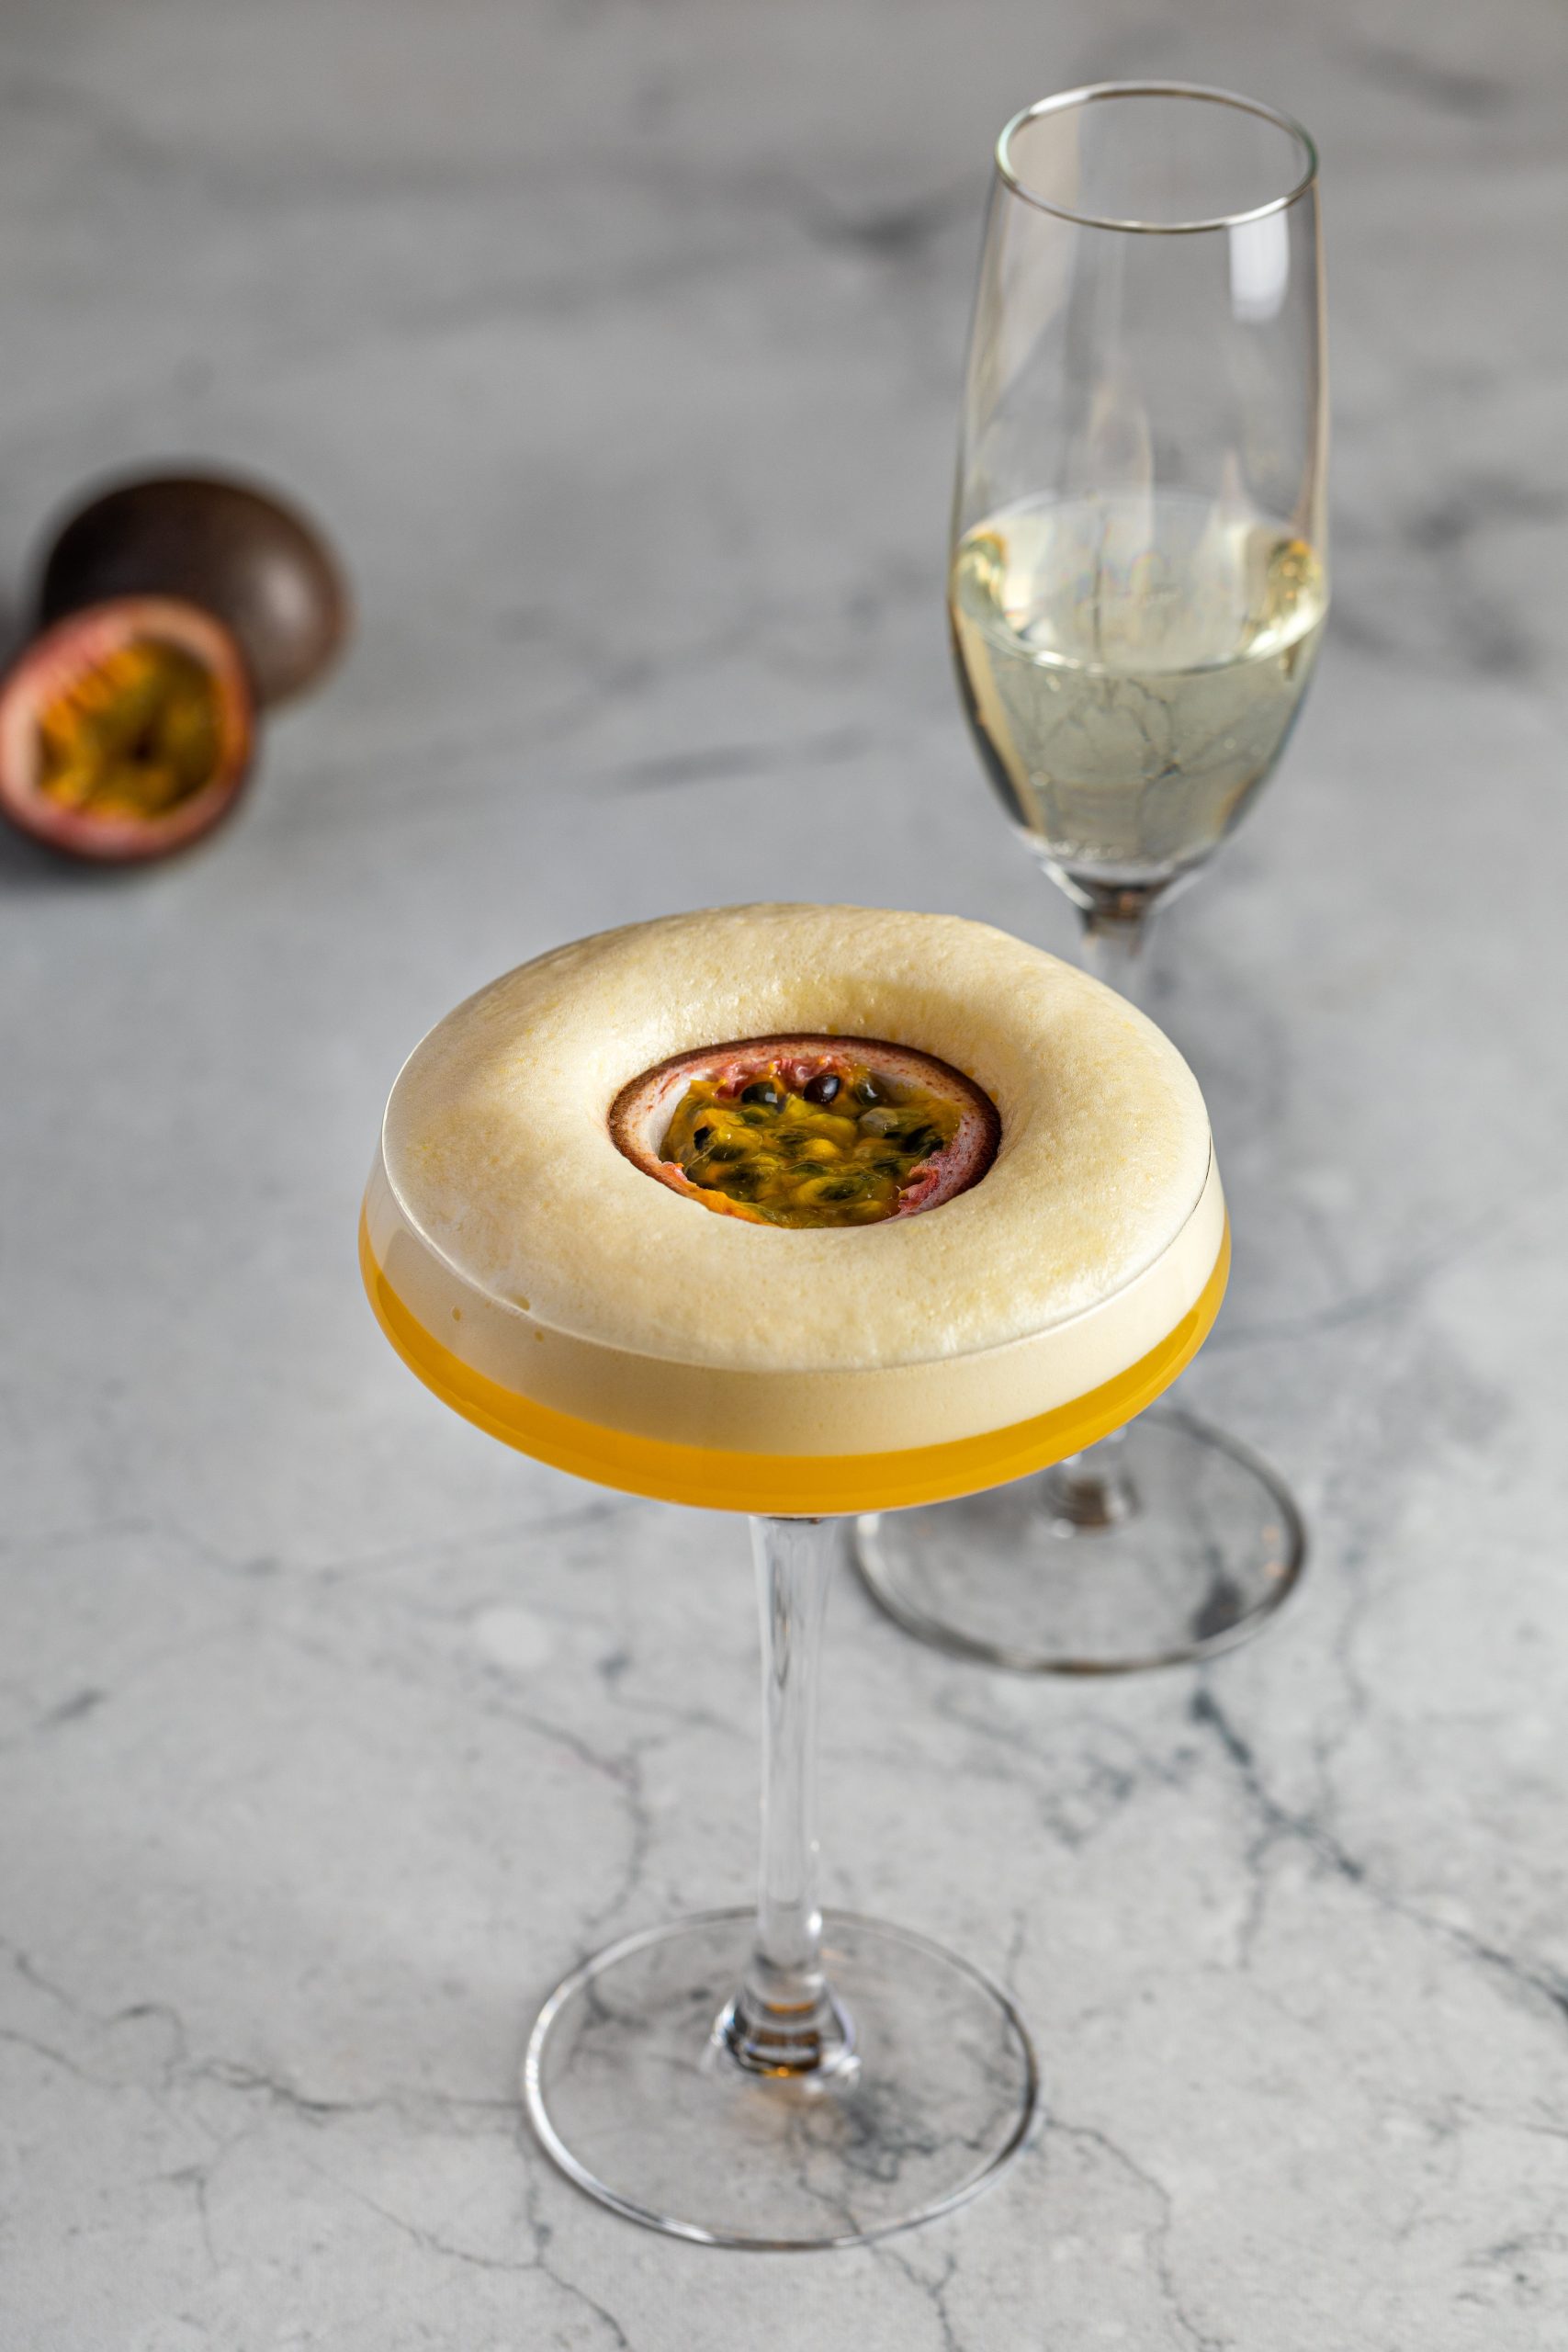 Passion fruit (marakujové) martini , silvestrovský drink